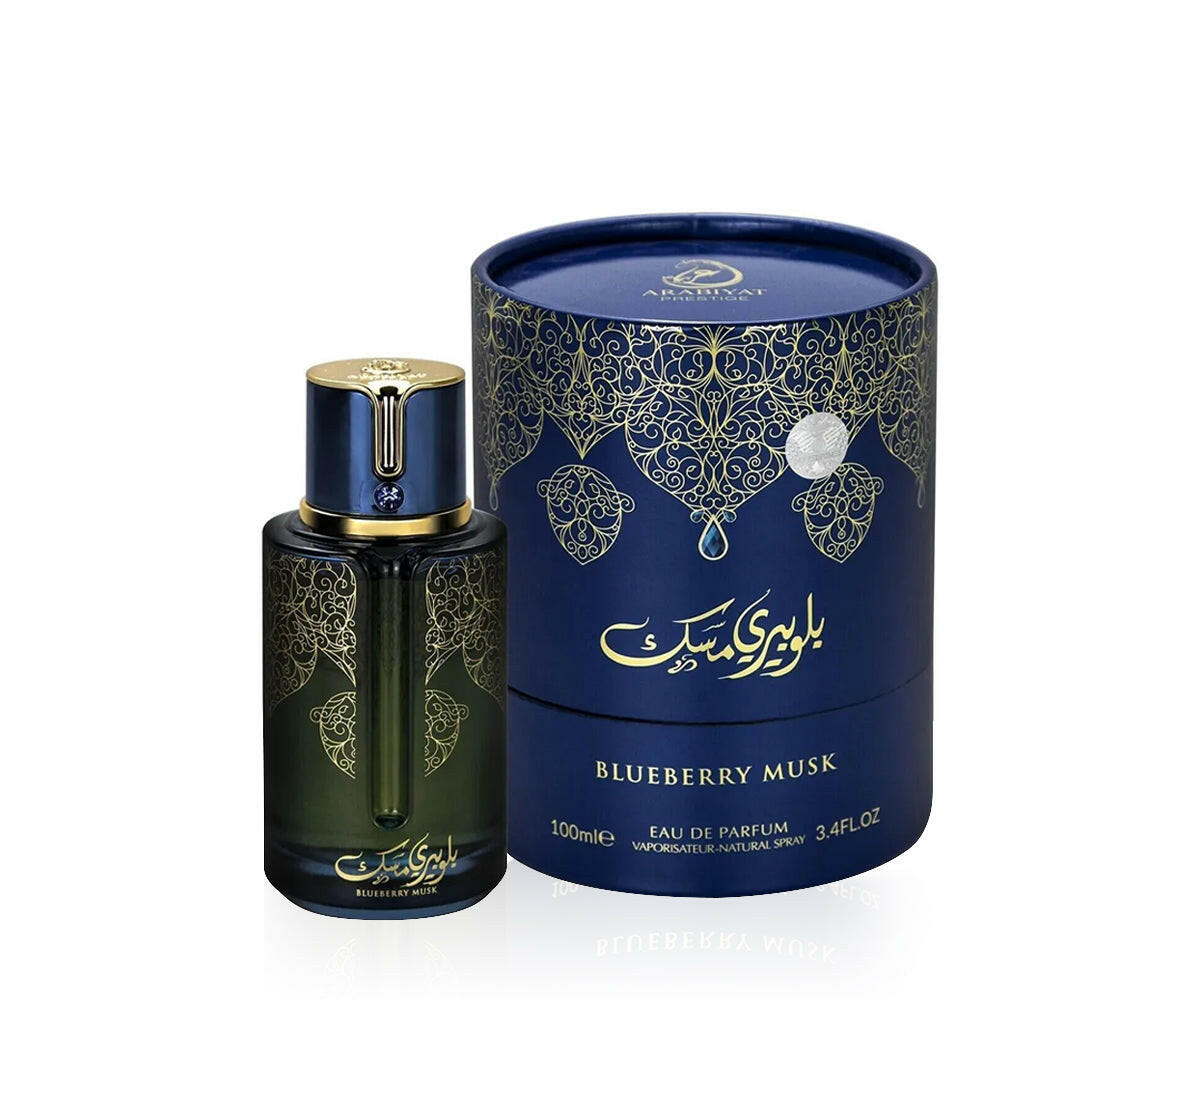 Blueberry Musk Eau de Parfum 100ml by Arabiyat Prestige